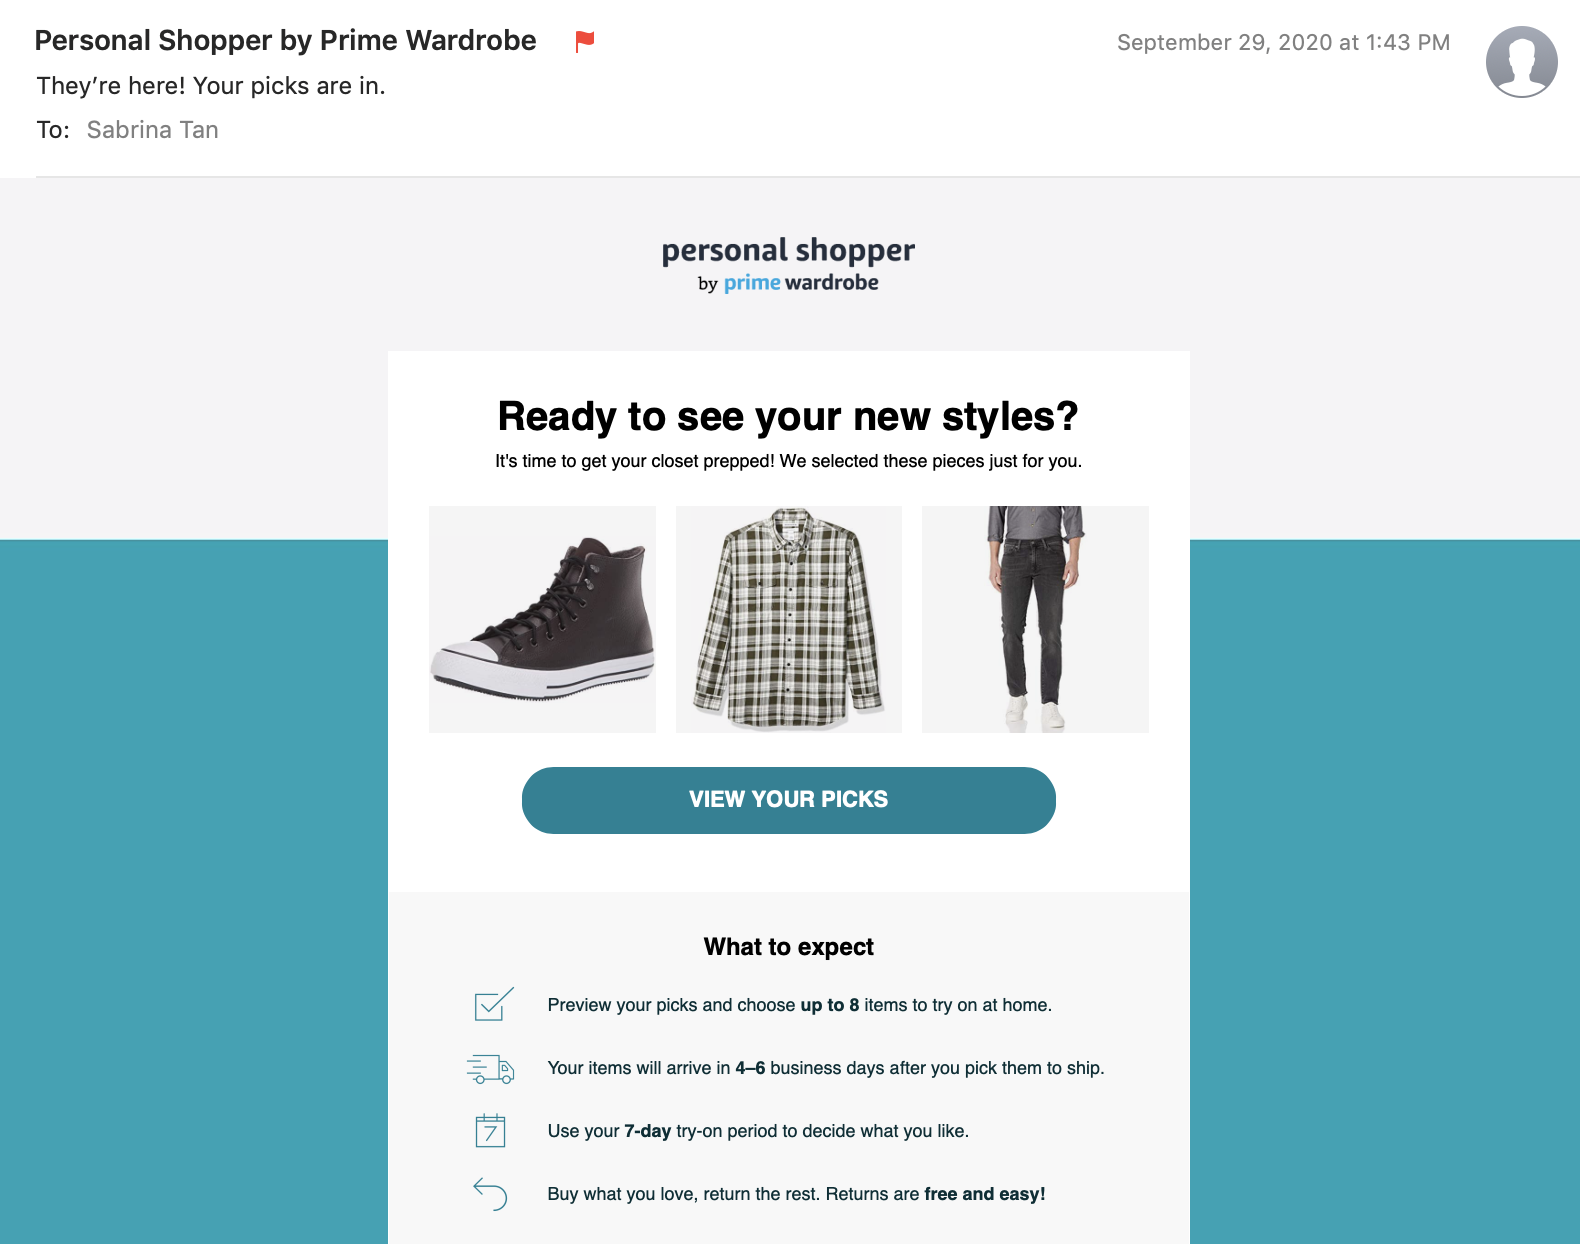 Personal Shopper by Prime Wardrobe